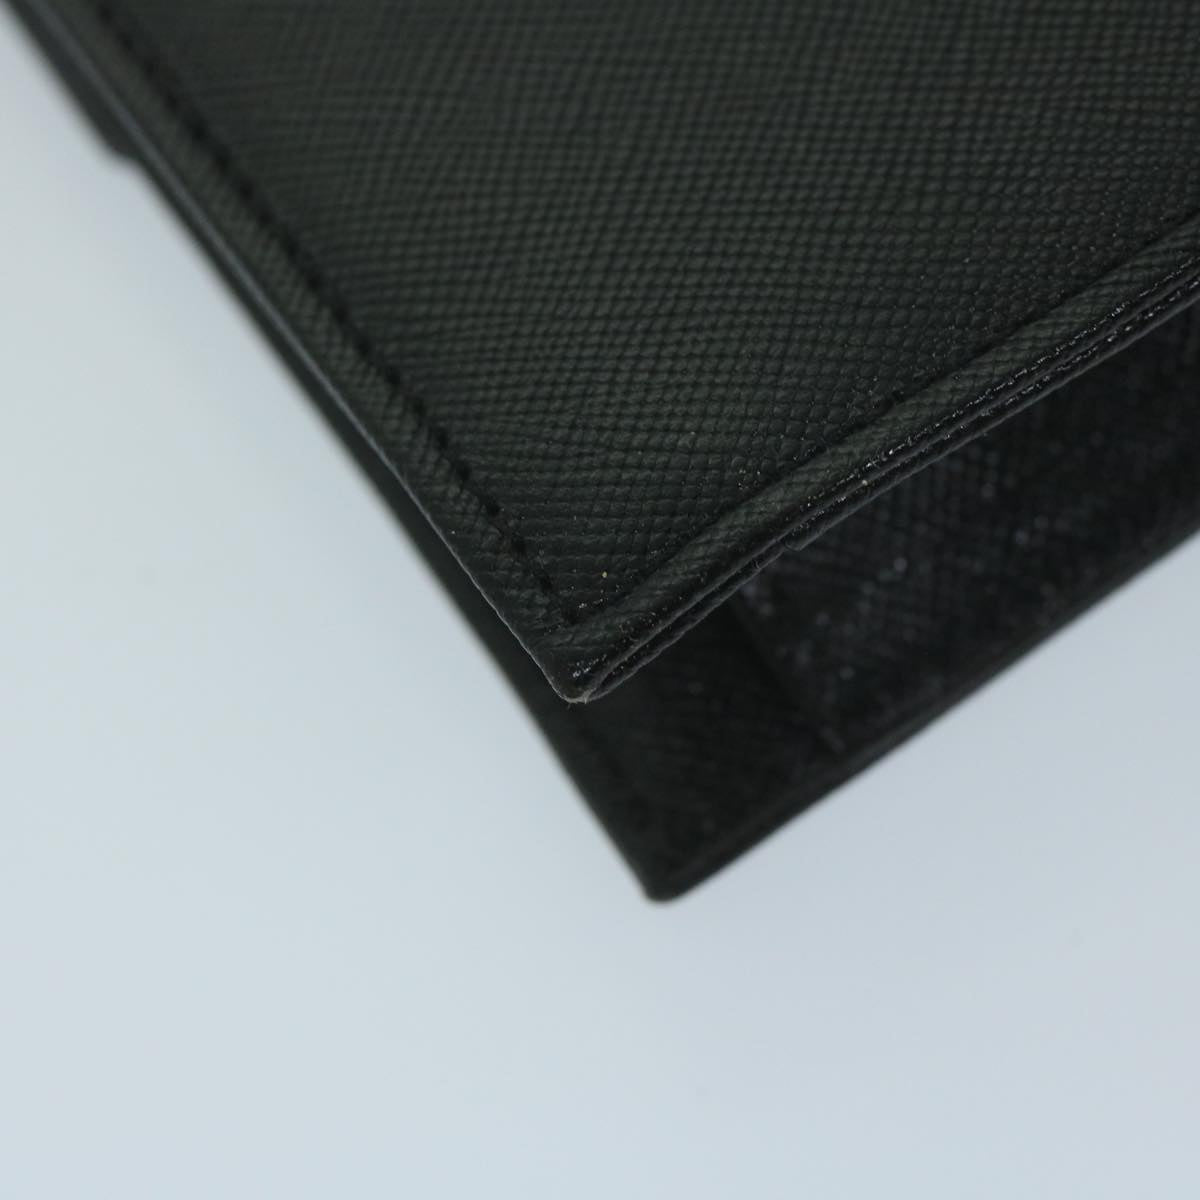 SAINT LAURENT Clutch Bag Leather Black Auth 63837